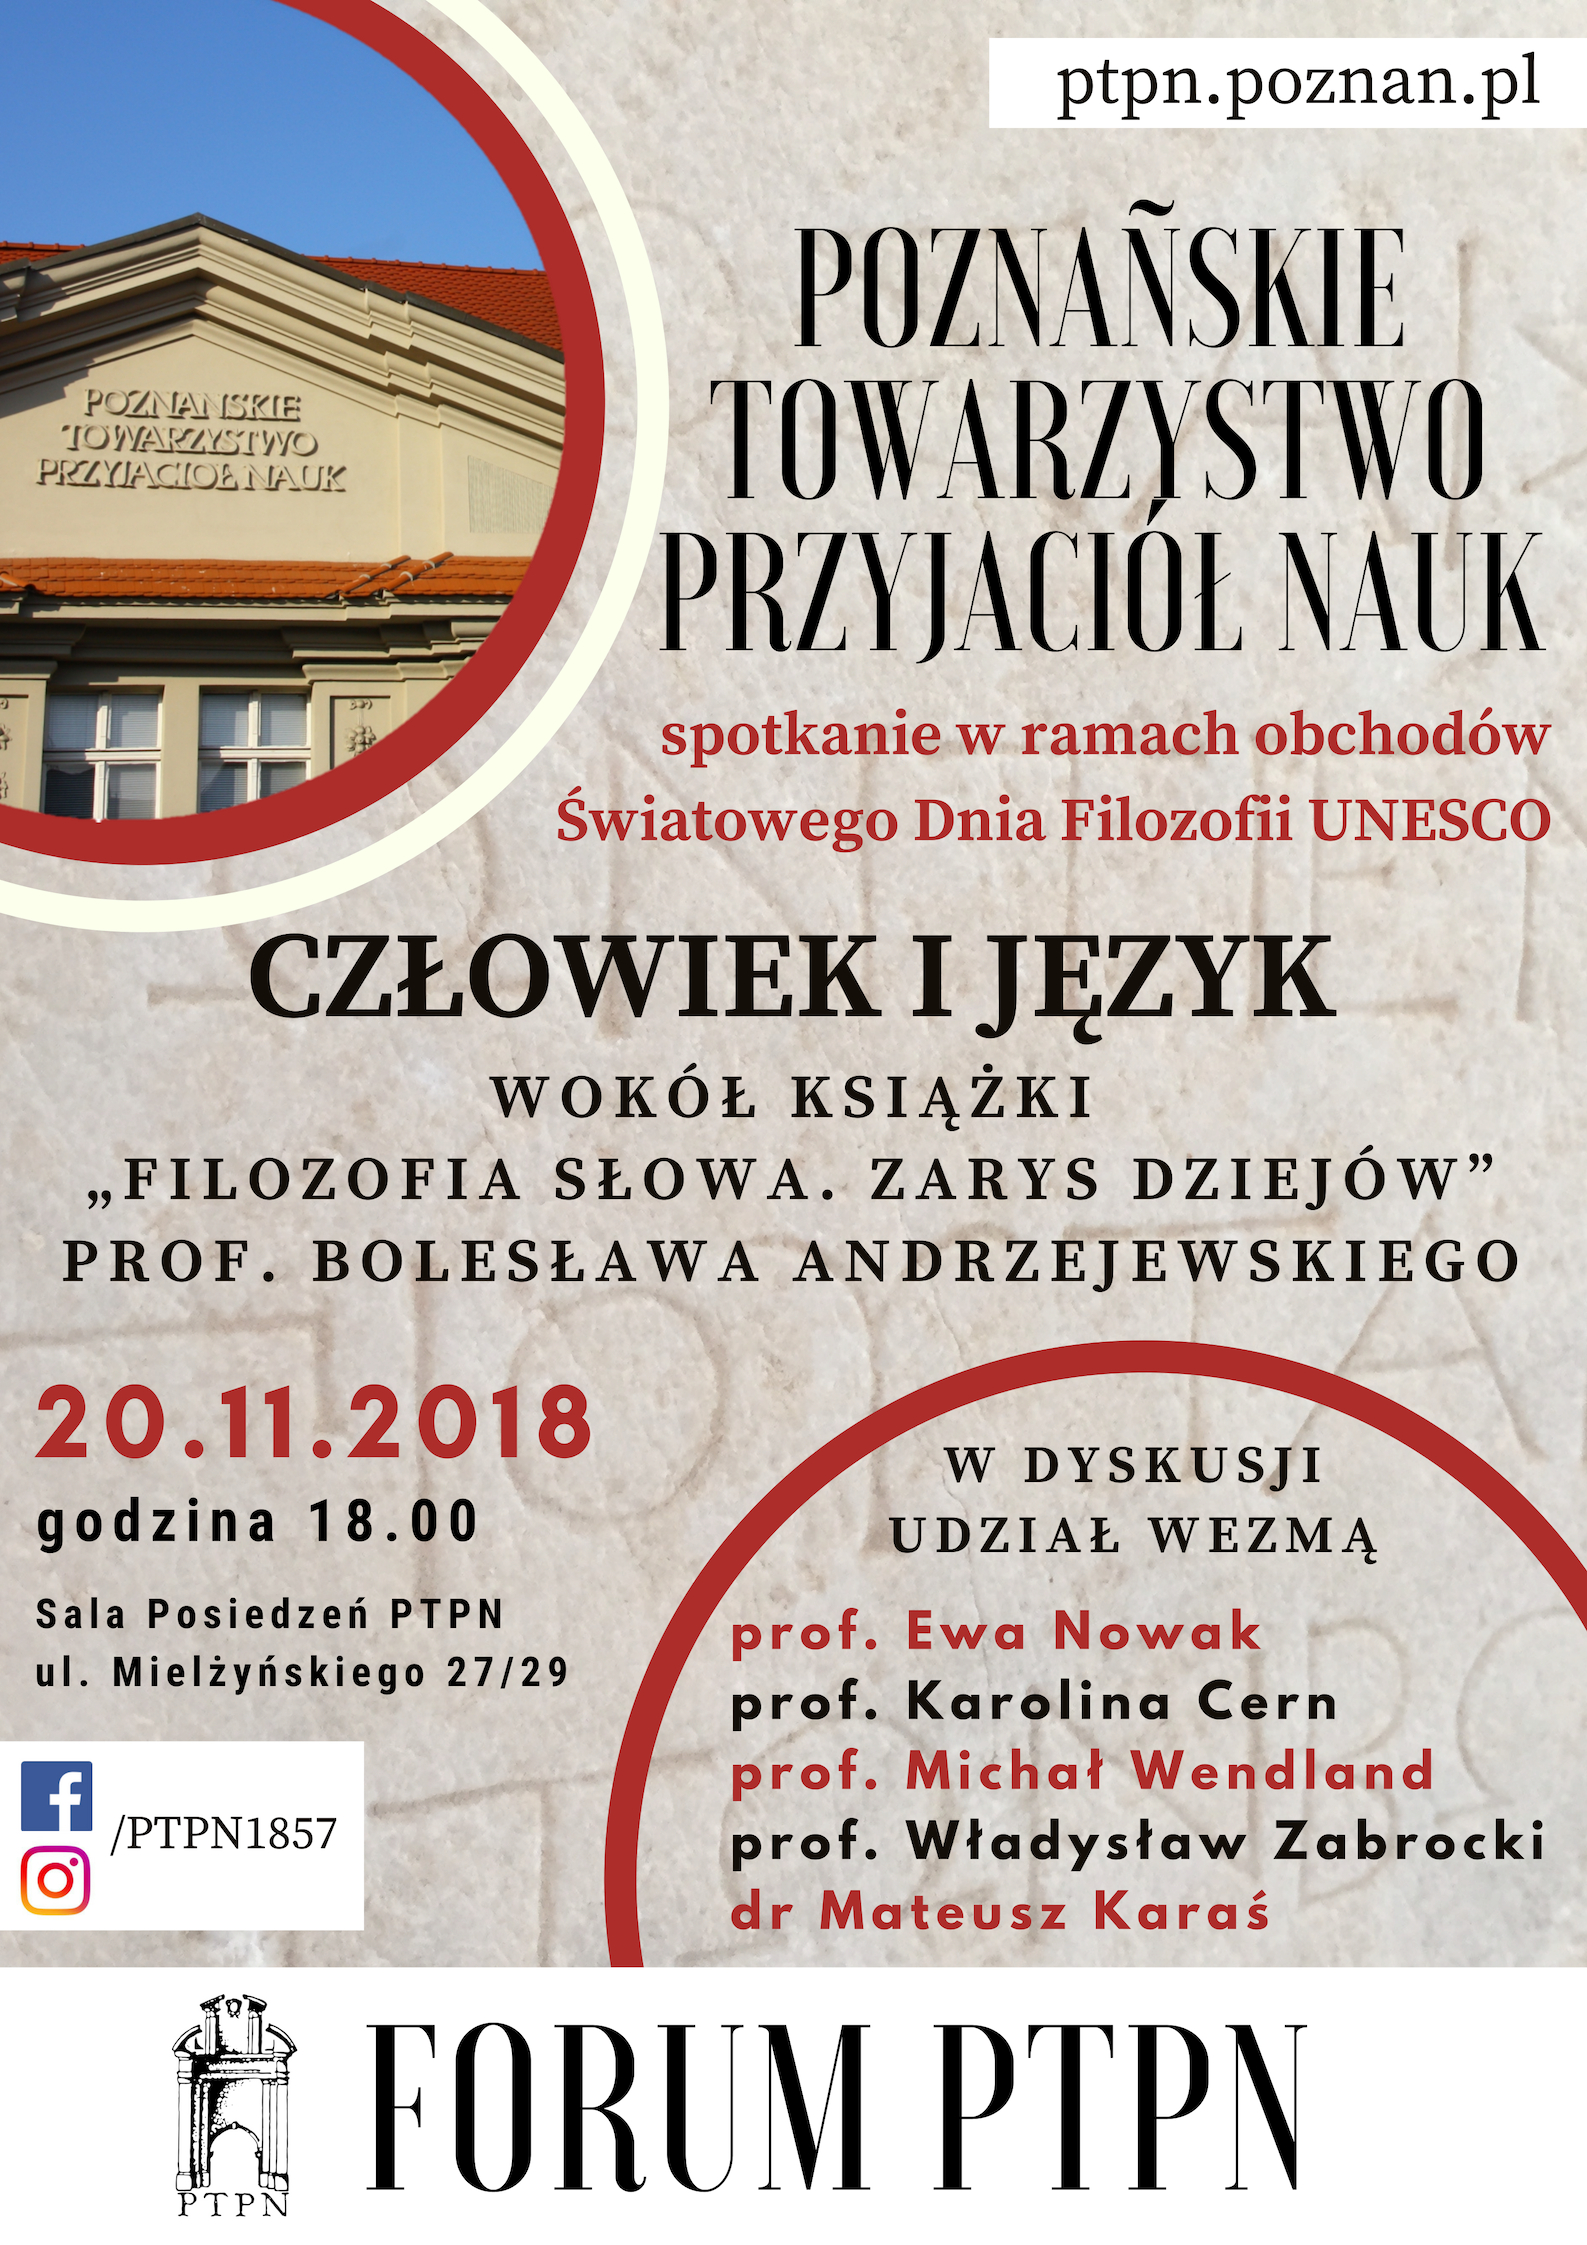 Forum PTPN – spotkanie z prof. Bolesławem Andrzejewskim